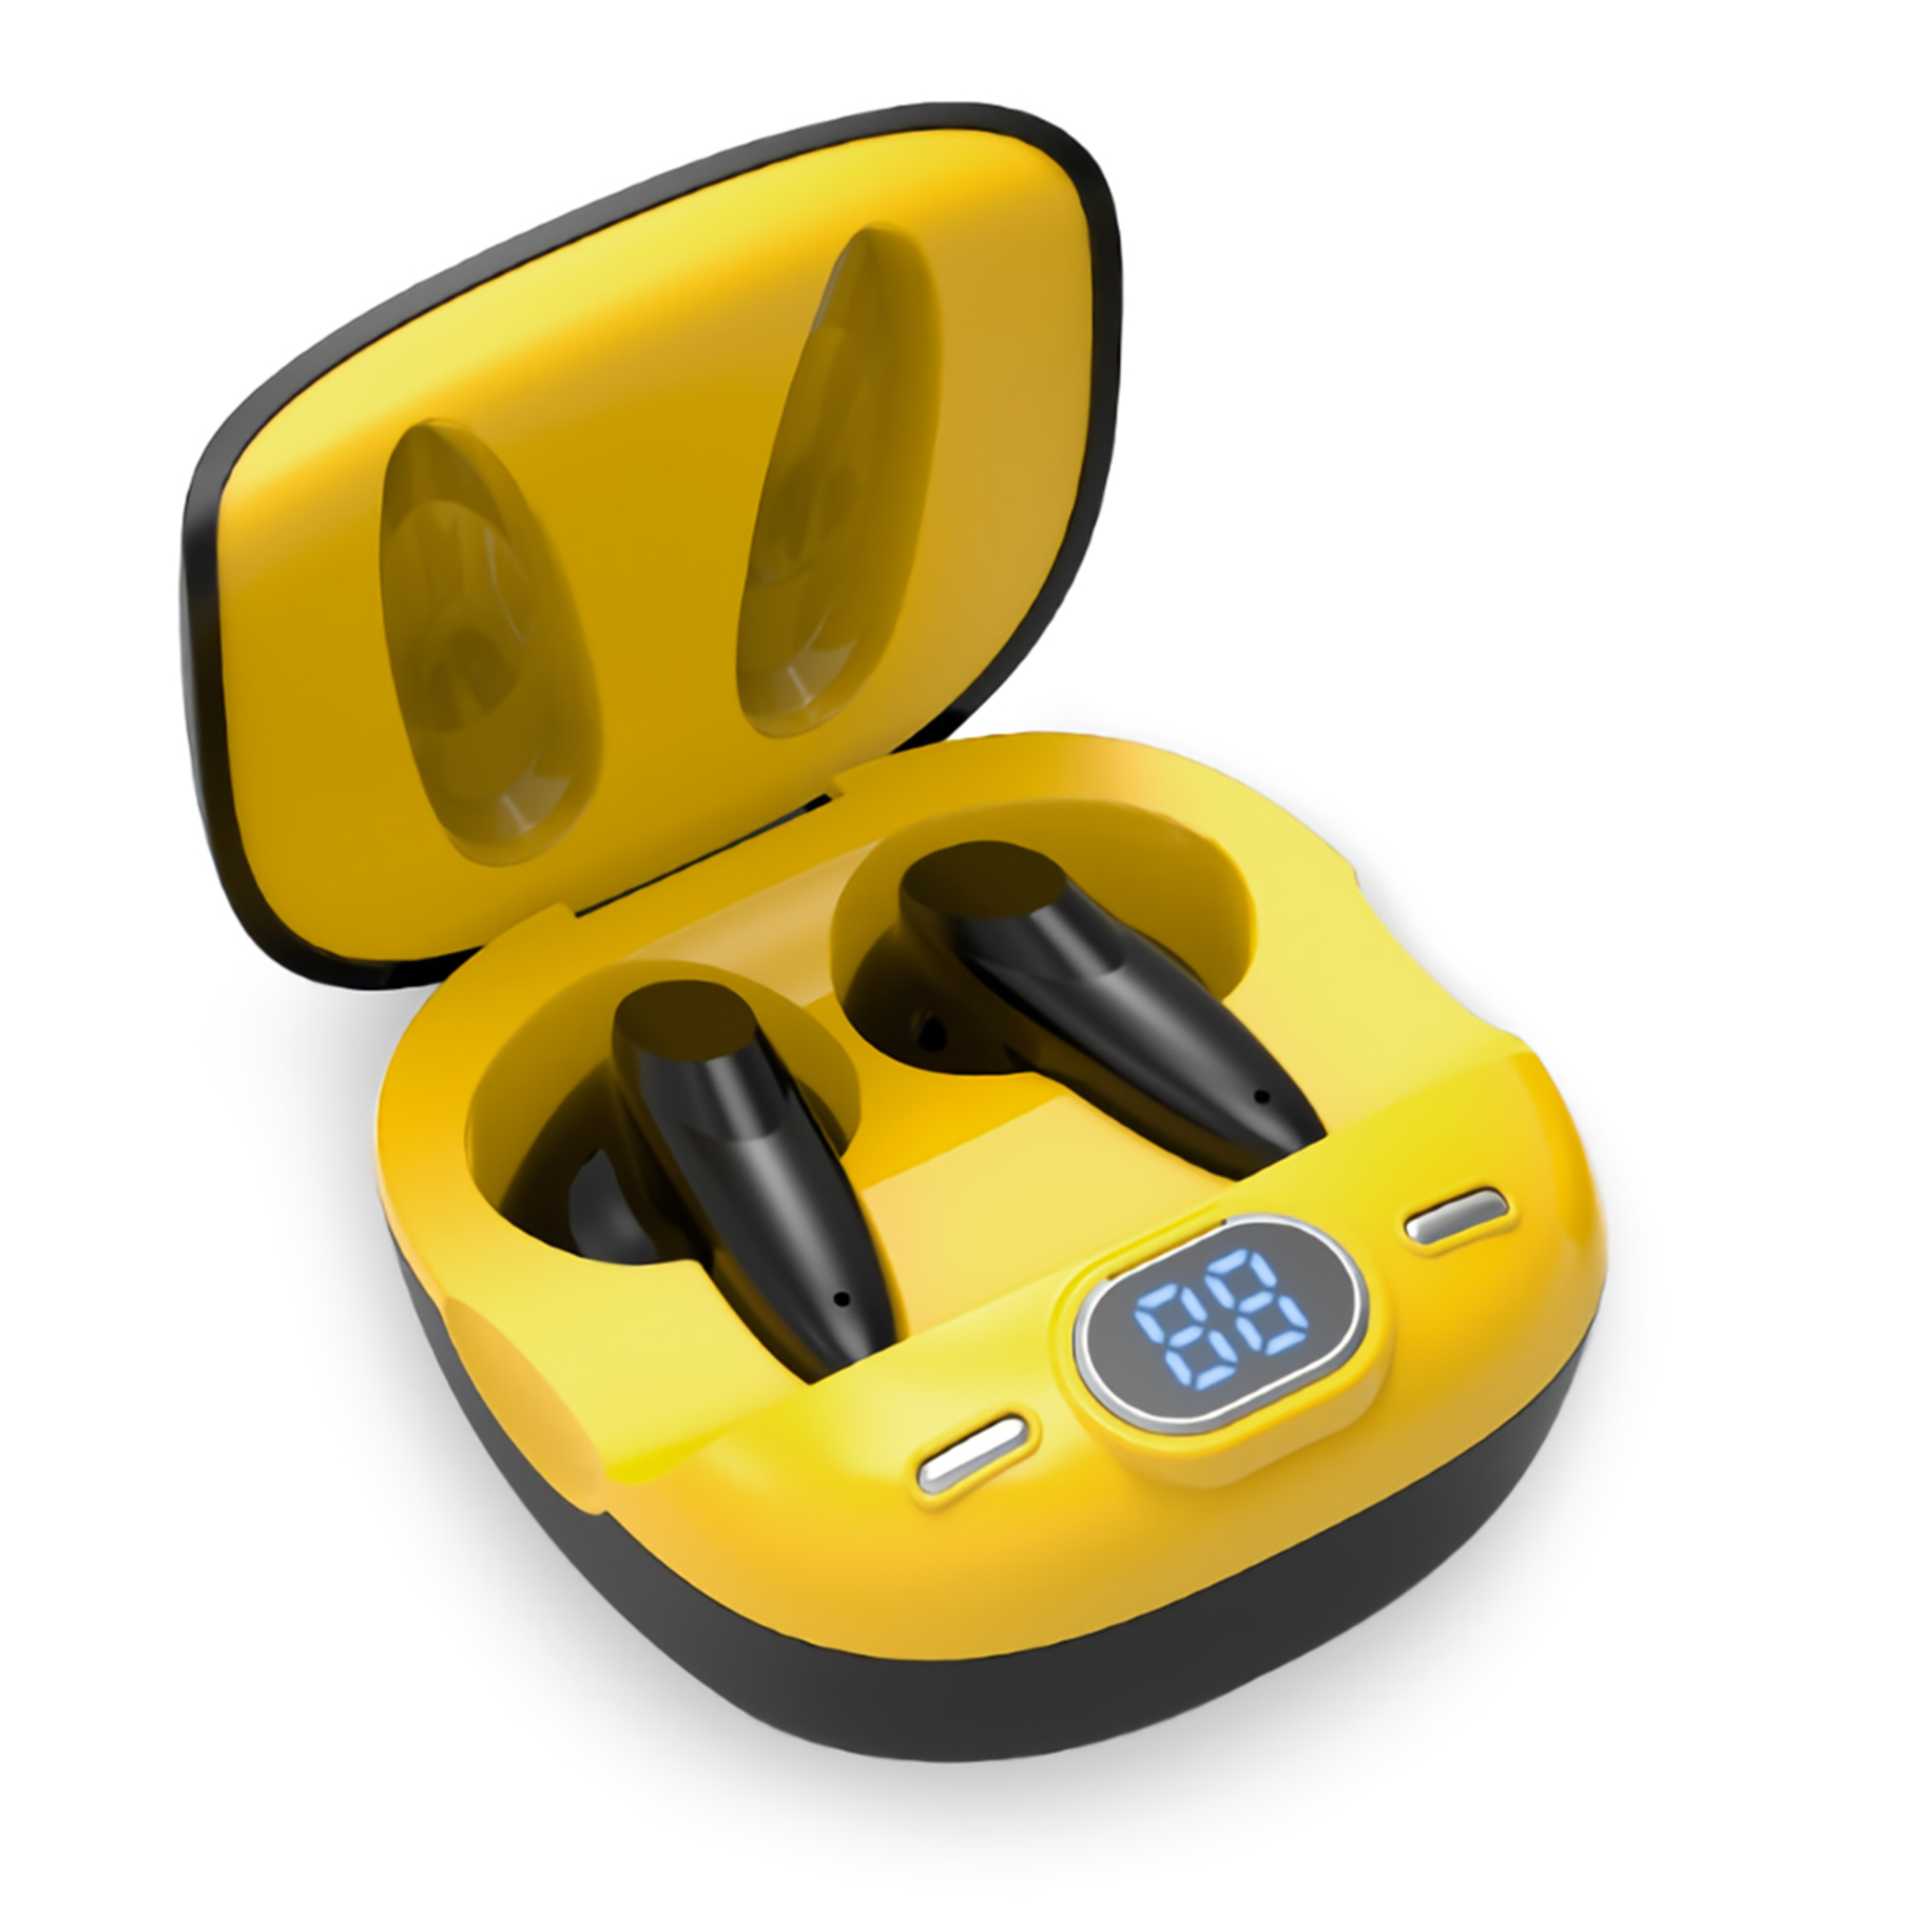 Auriculares Smartek Tws-400 Bluetooth 5.1 Sonido Hd - Amarillo - Auriculares Tws-400 Bluetooth 5.1  MKP